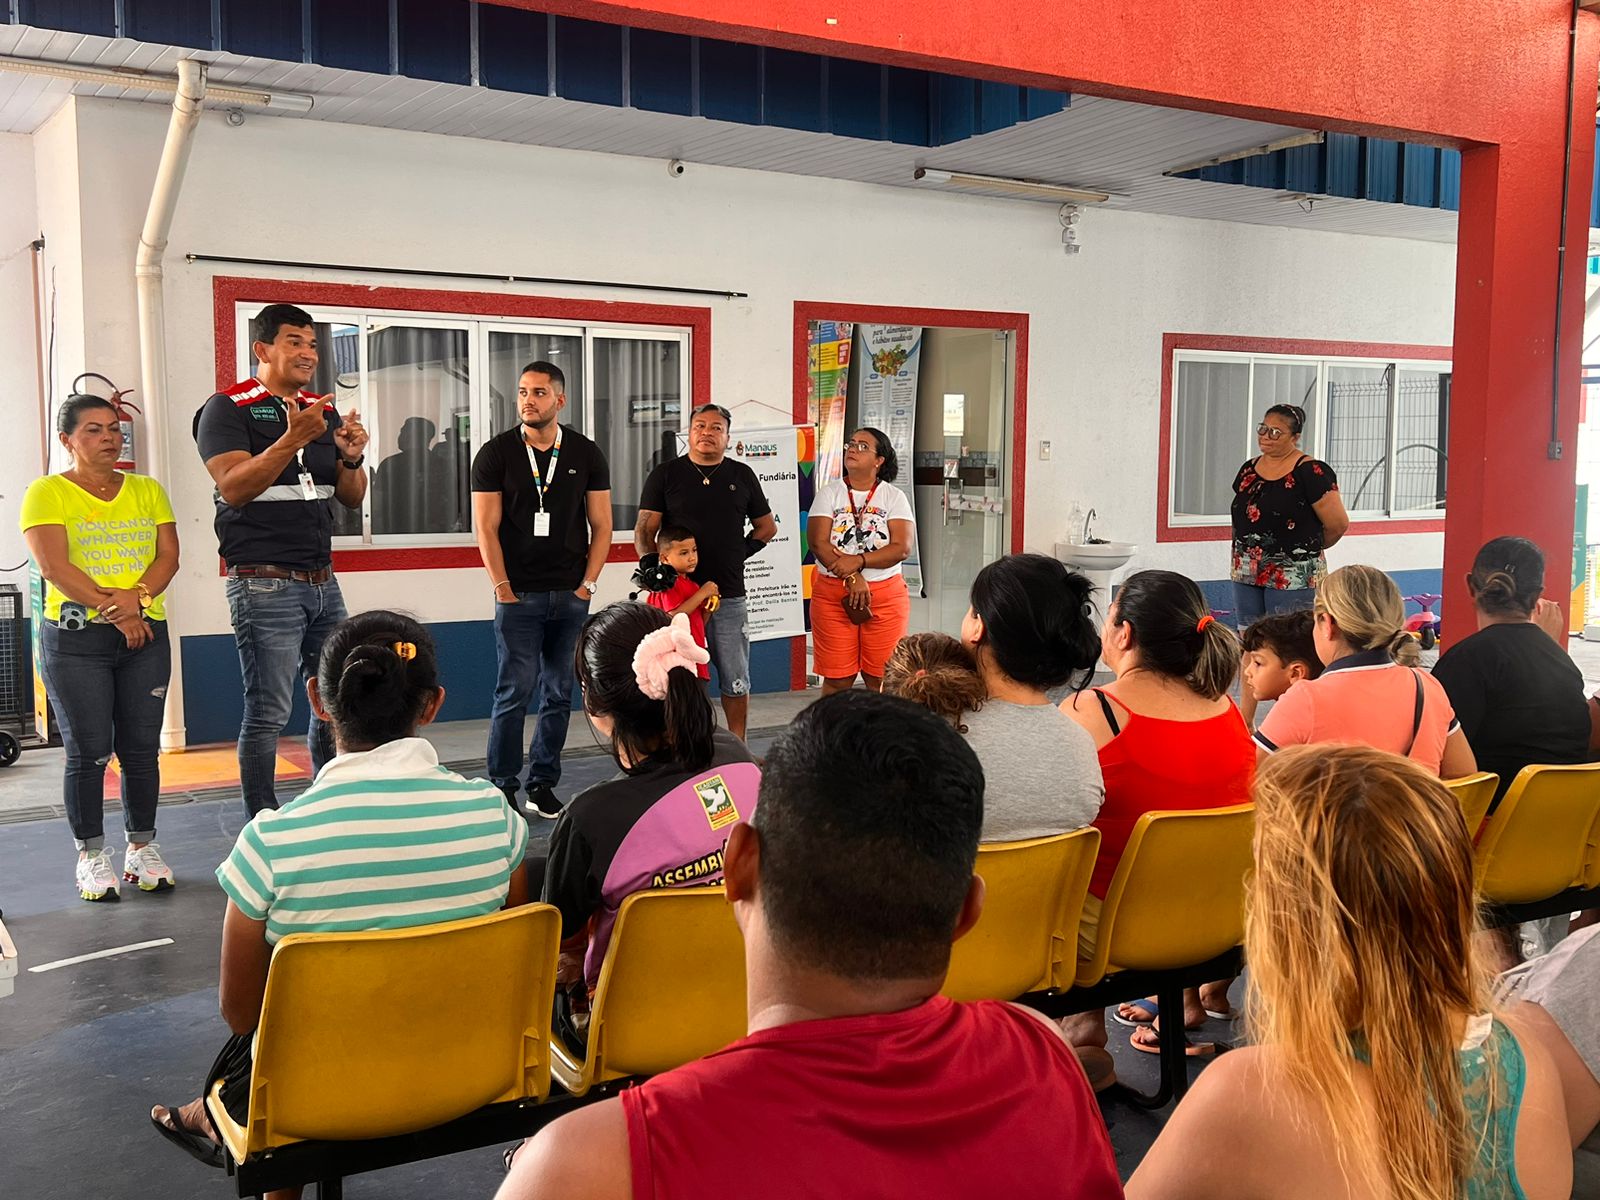  Cadastramento para regularização fundiária em comunidades das zonas Leste e Norte é iniciado pela Prefeitura de Manaus/ Foto – Divulgação / Semhaf